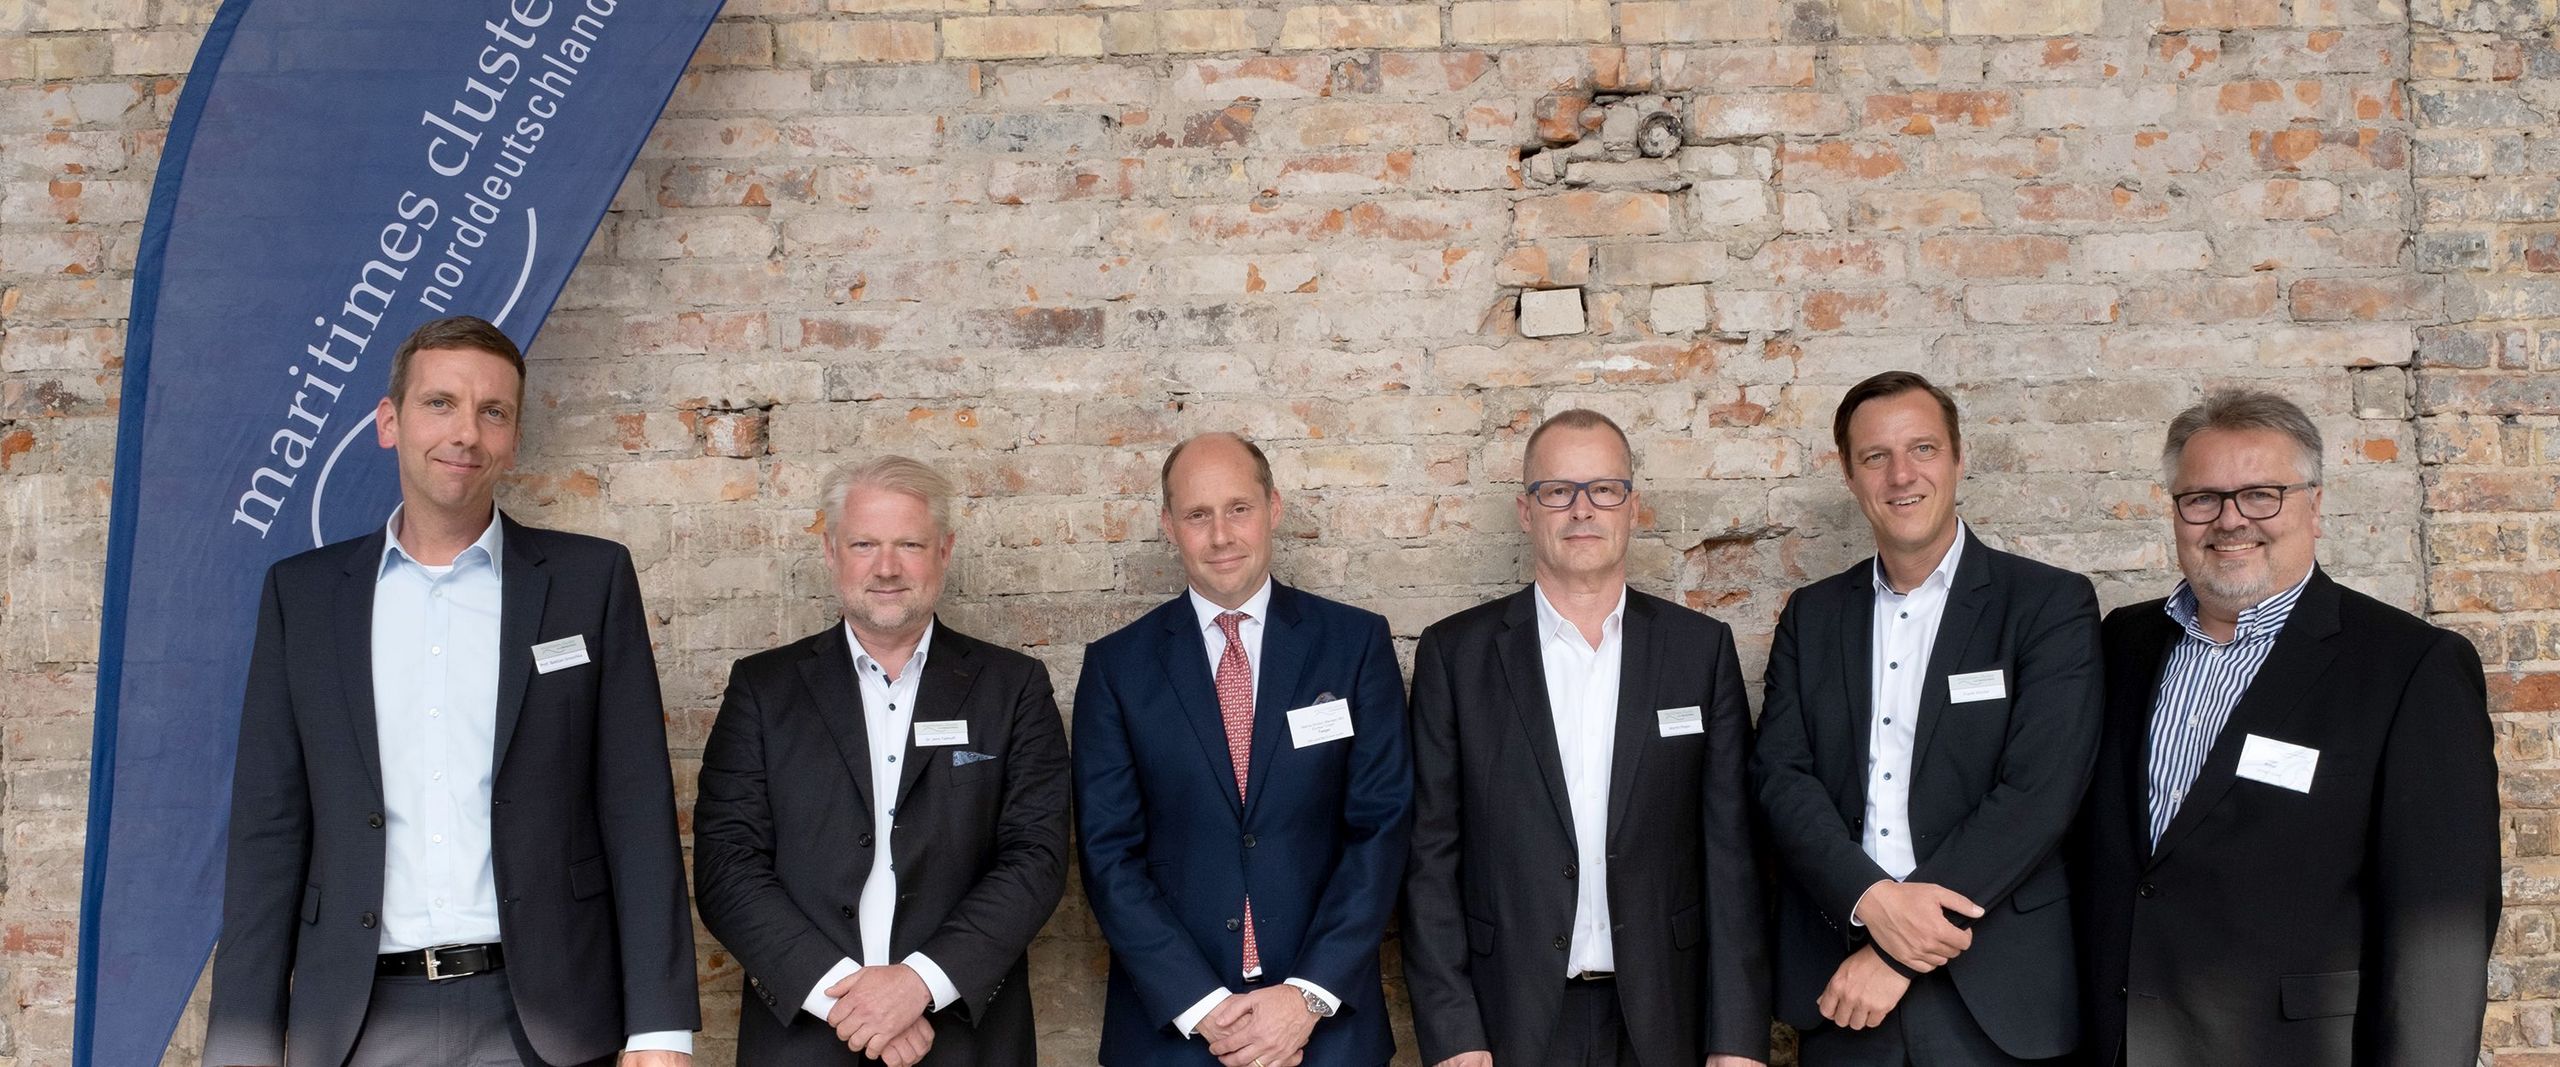 Gruppenbild mit sechs Vorstandsmitgliedern des Maritimen Clusters Norddeutschland.